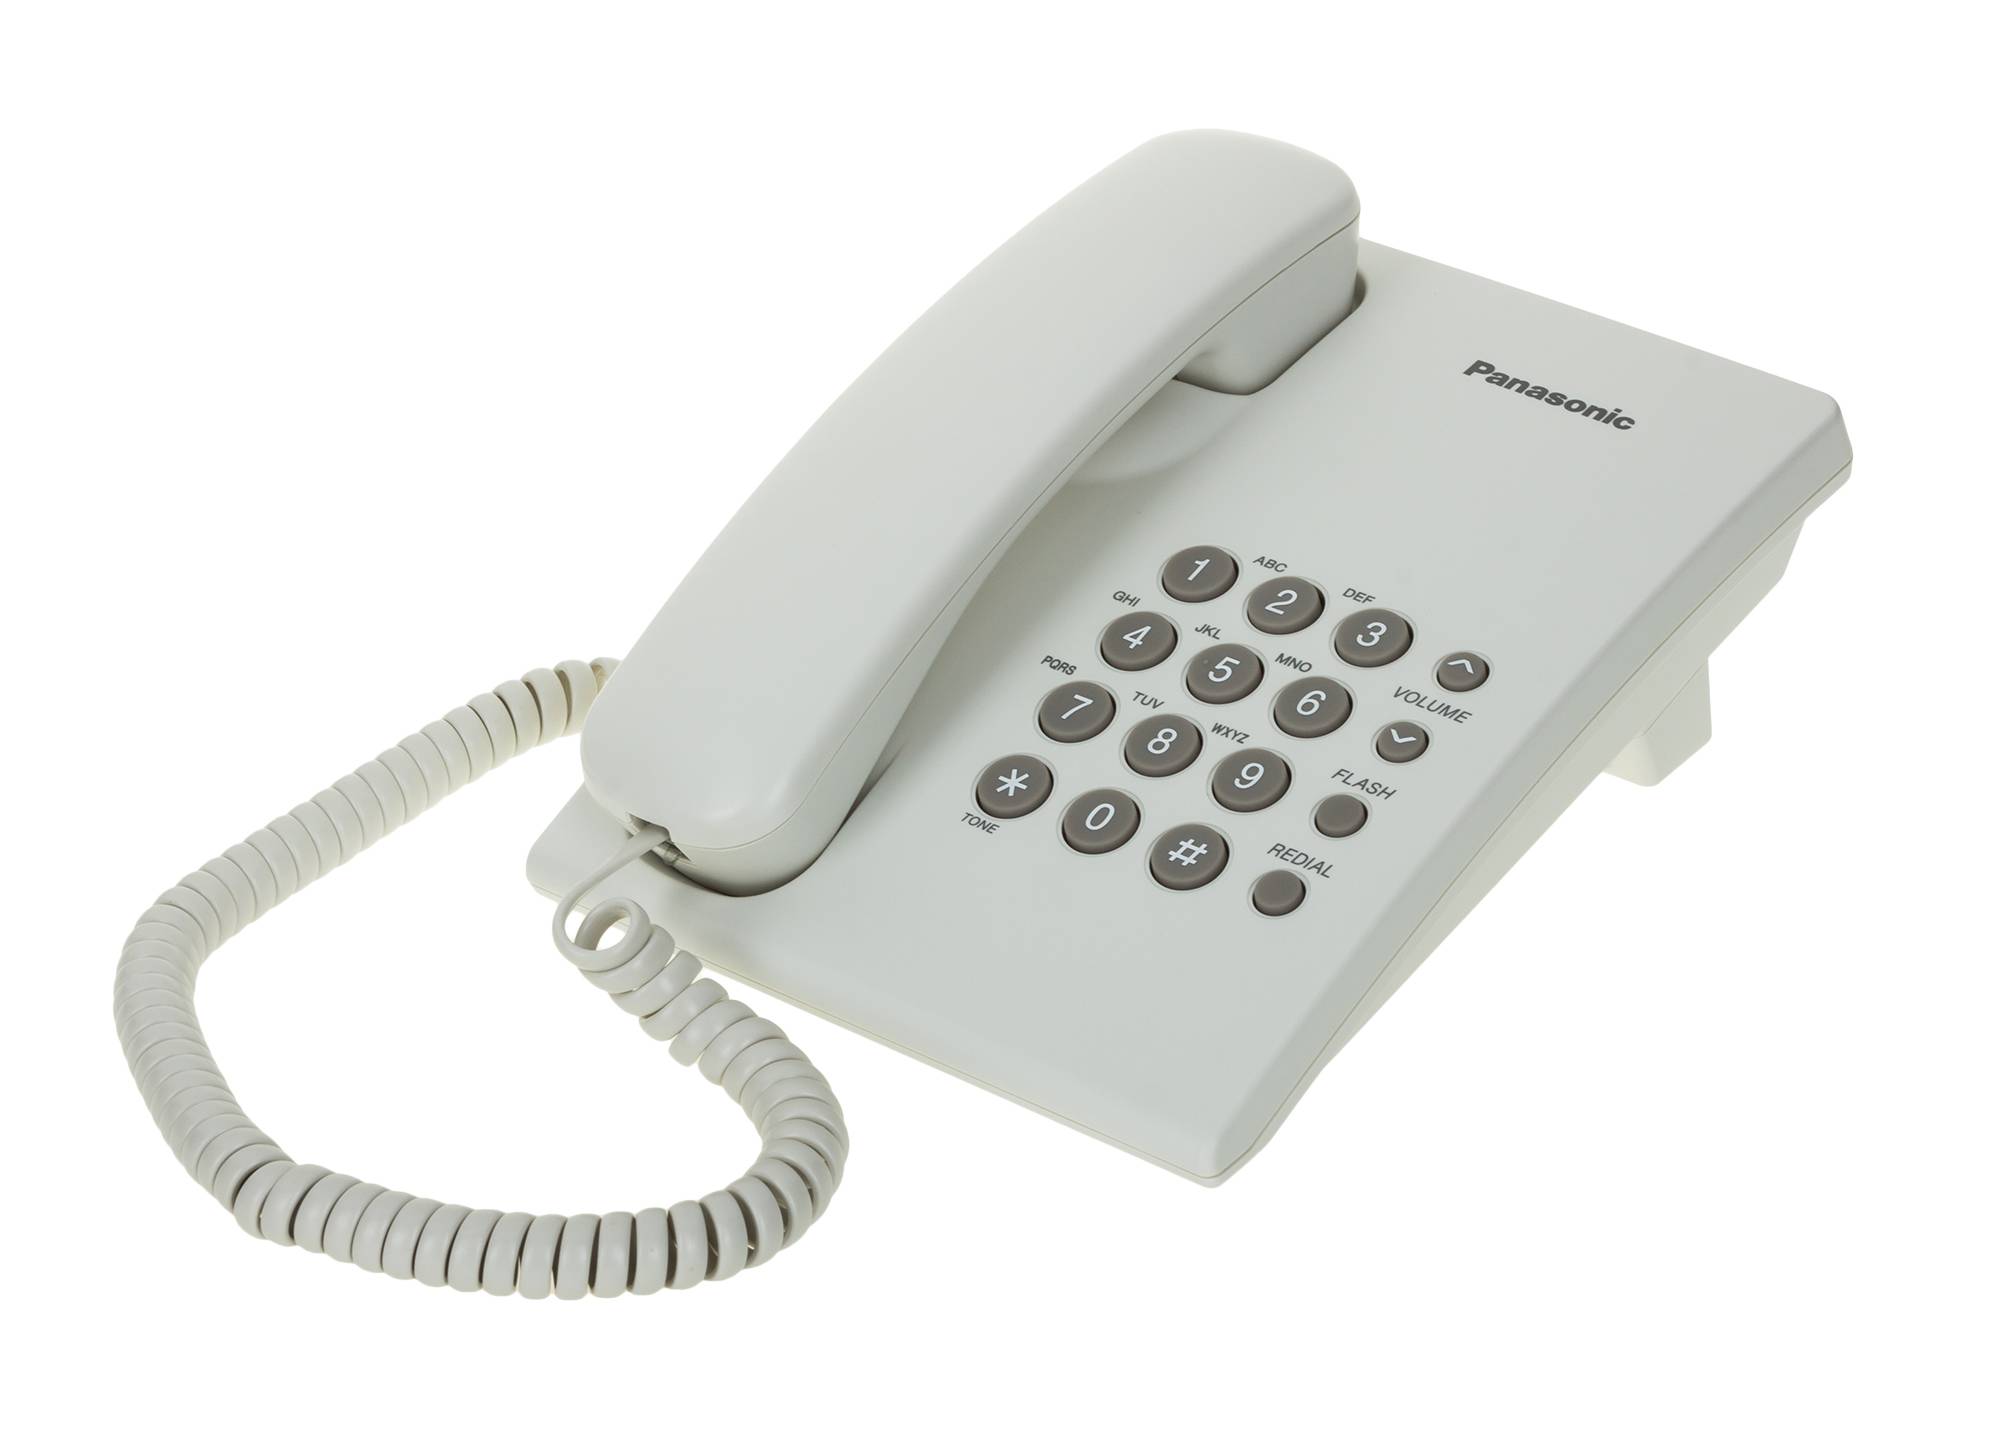 Простой домашний телефон. Телефон Panasonic KX-ts2350 ruw белый. Panasonic KX-ts2350ruw белый. Телефон Panasonic KX-ts2350ruw. Аппарат телефонный проводной Panasonic KX-ts2350.